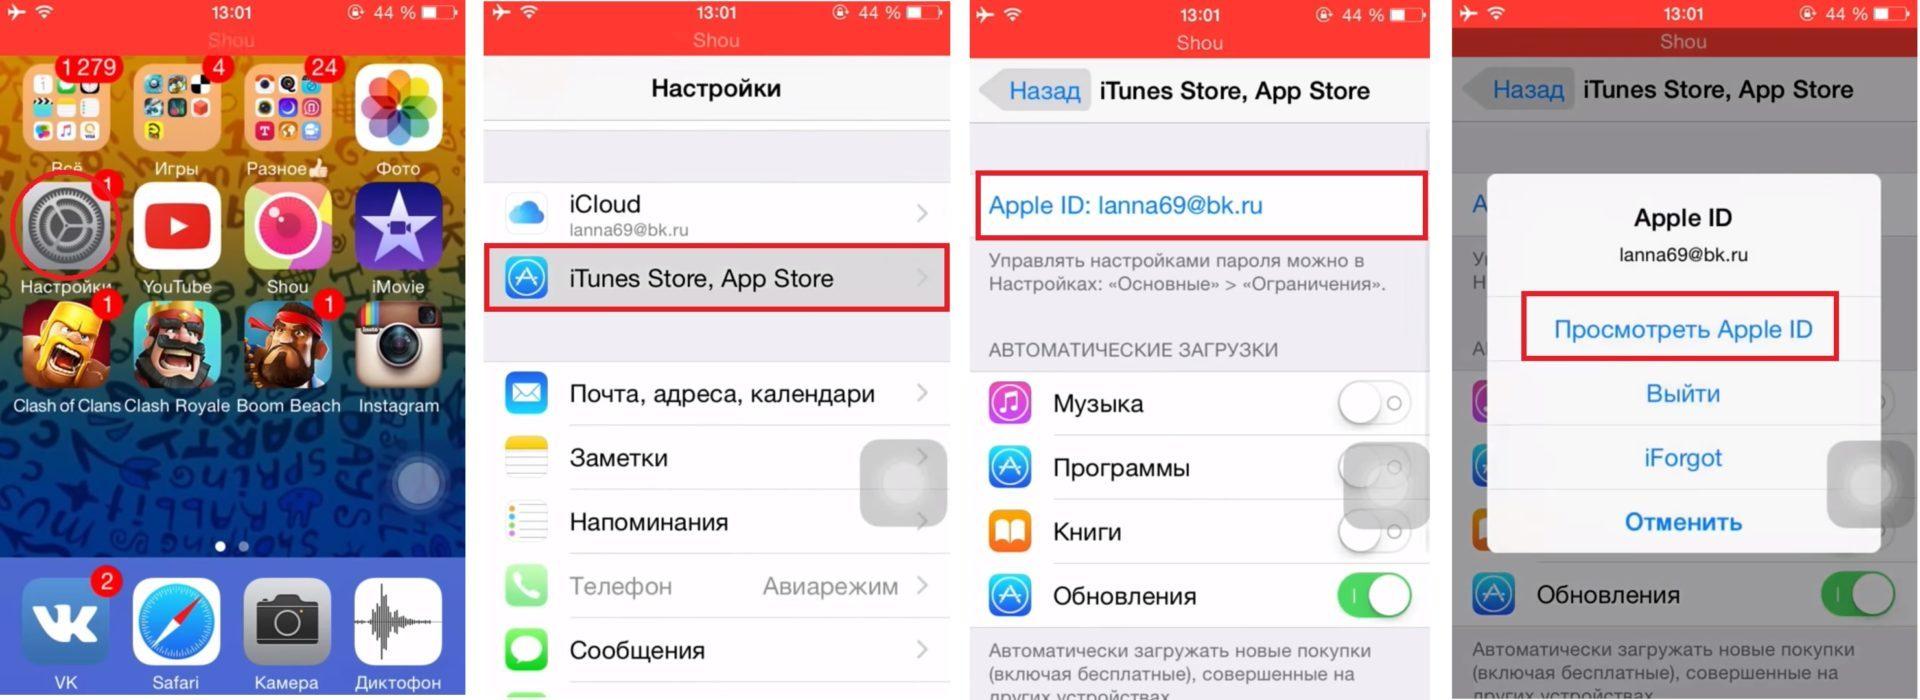 Как на телеграмме поменять язык на русский андроиде с английского на русский фото 66